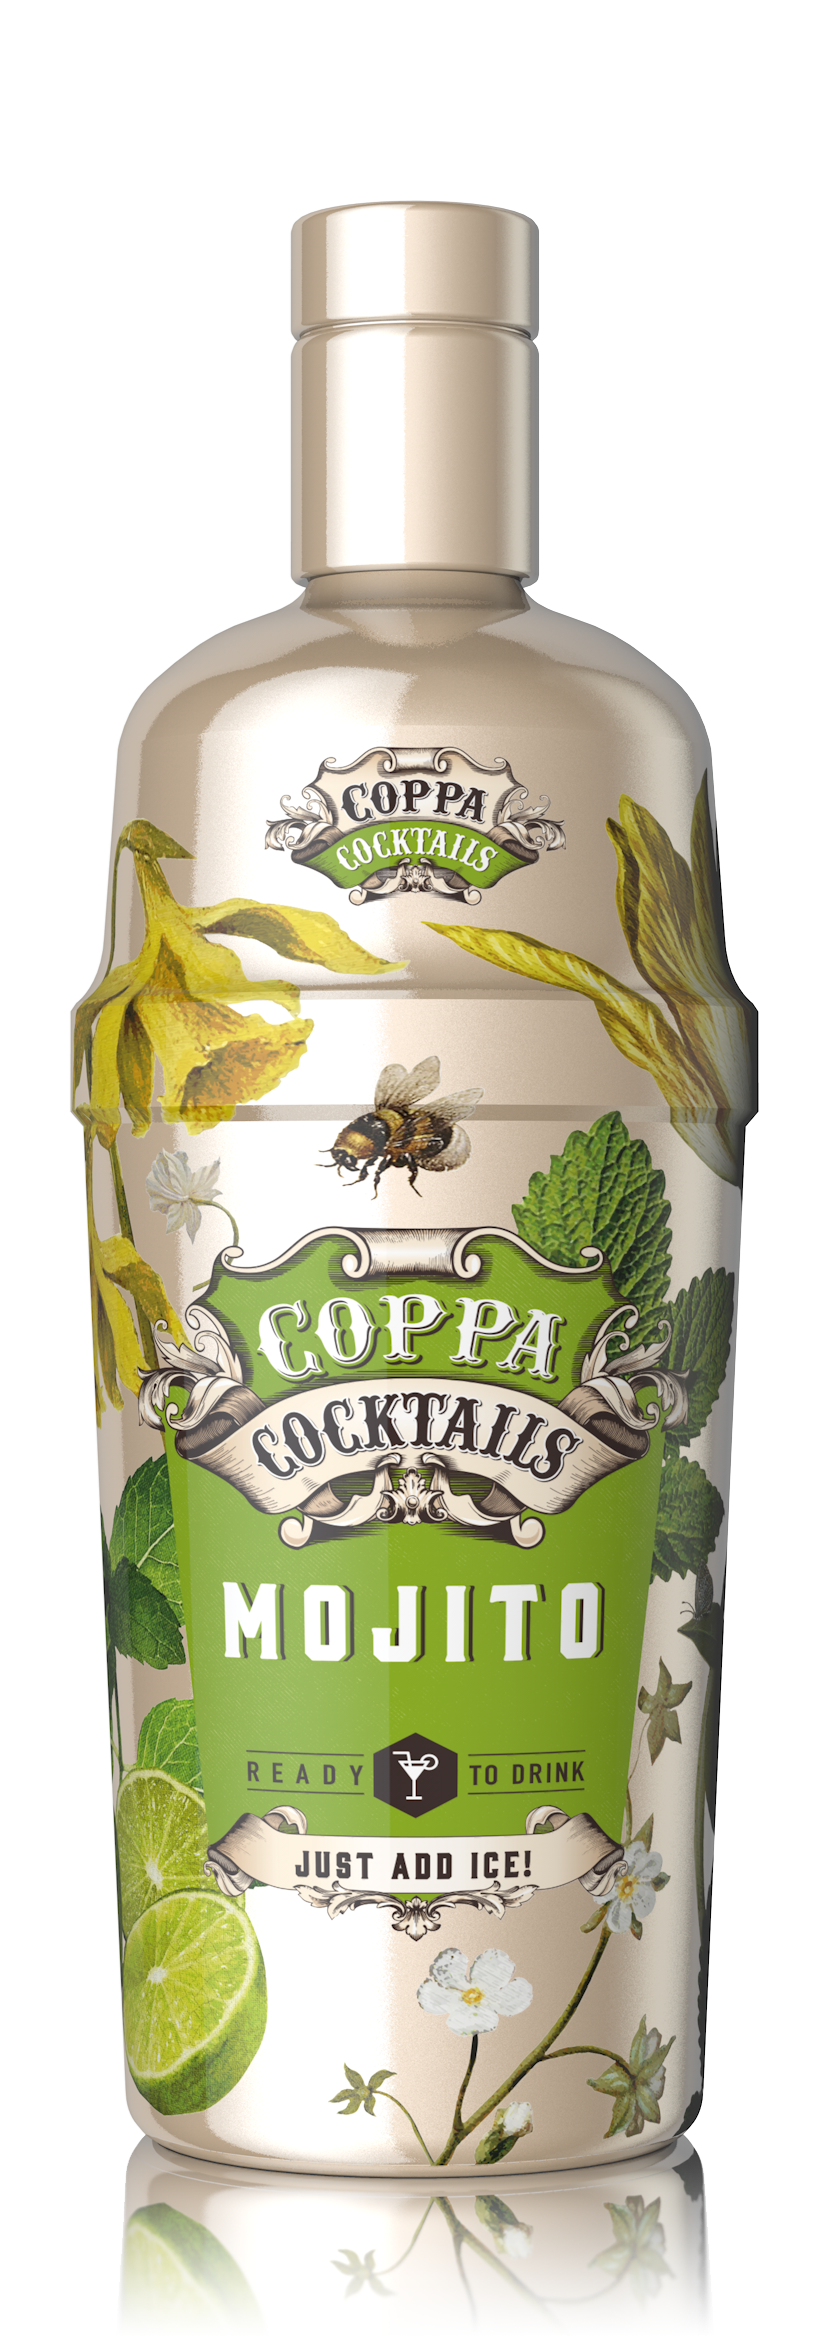 Coppa Cocktails Mojito 70cl 10%